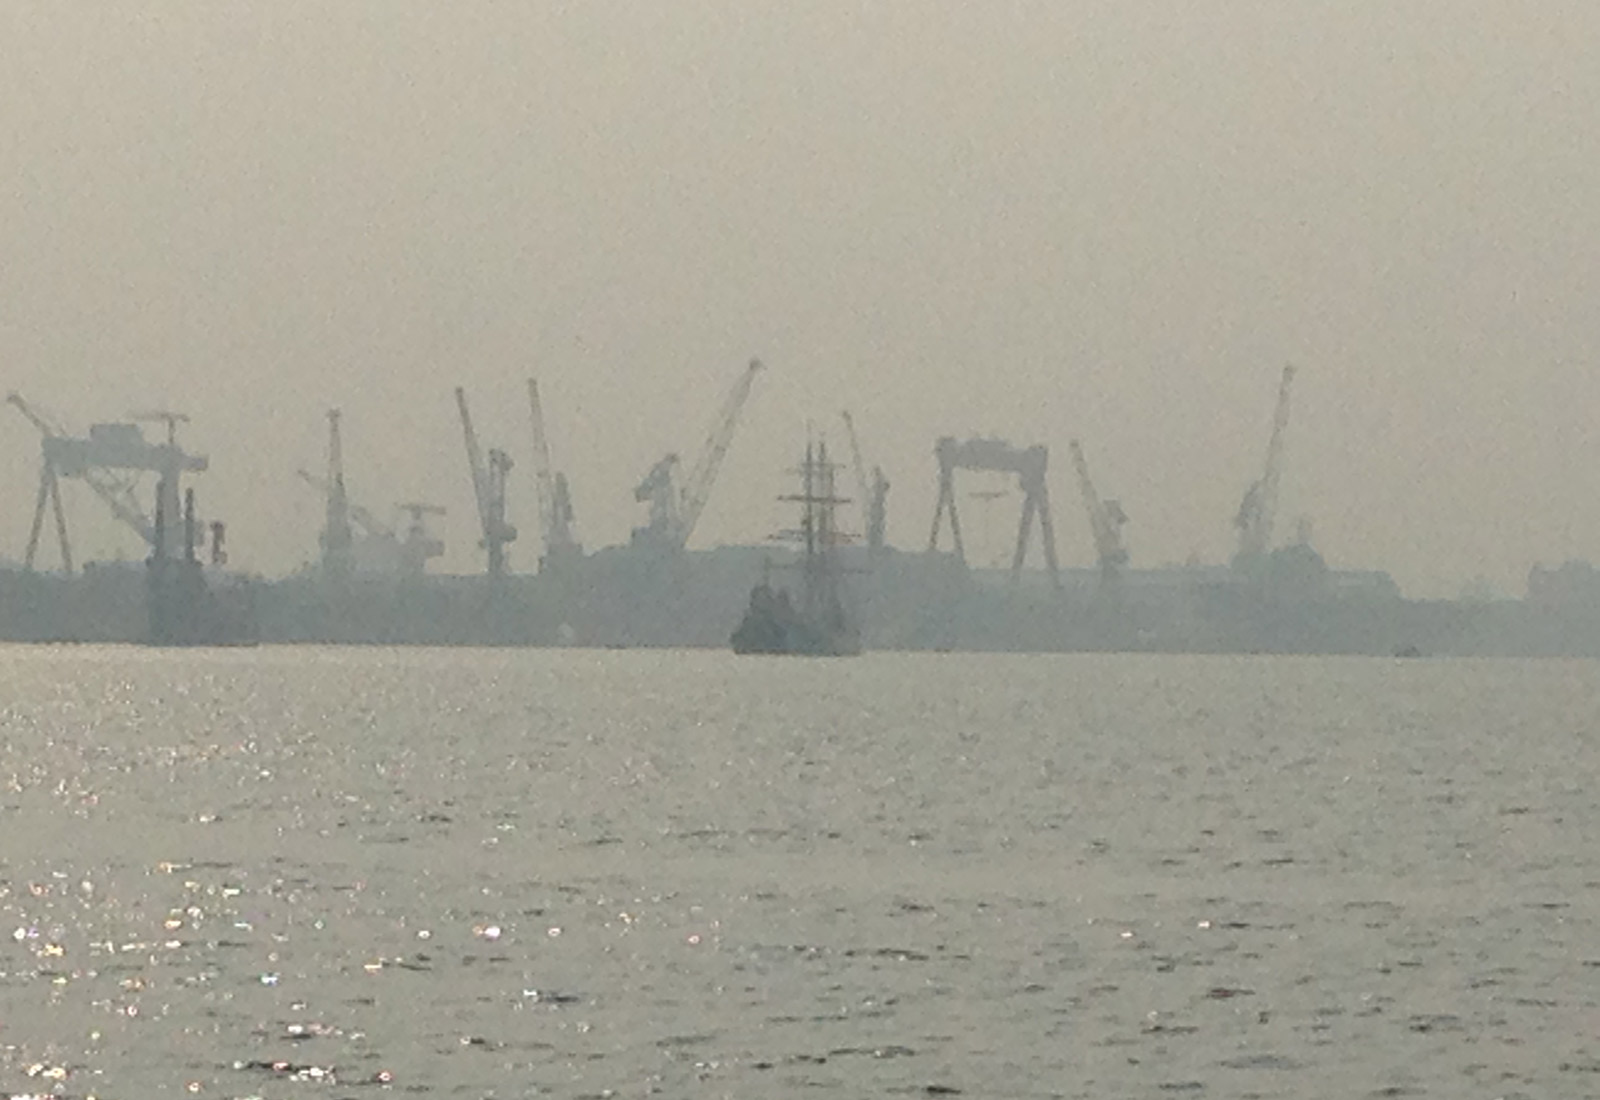 Tallship-Kochi-Harbour